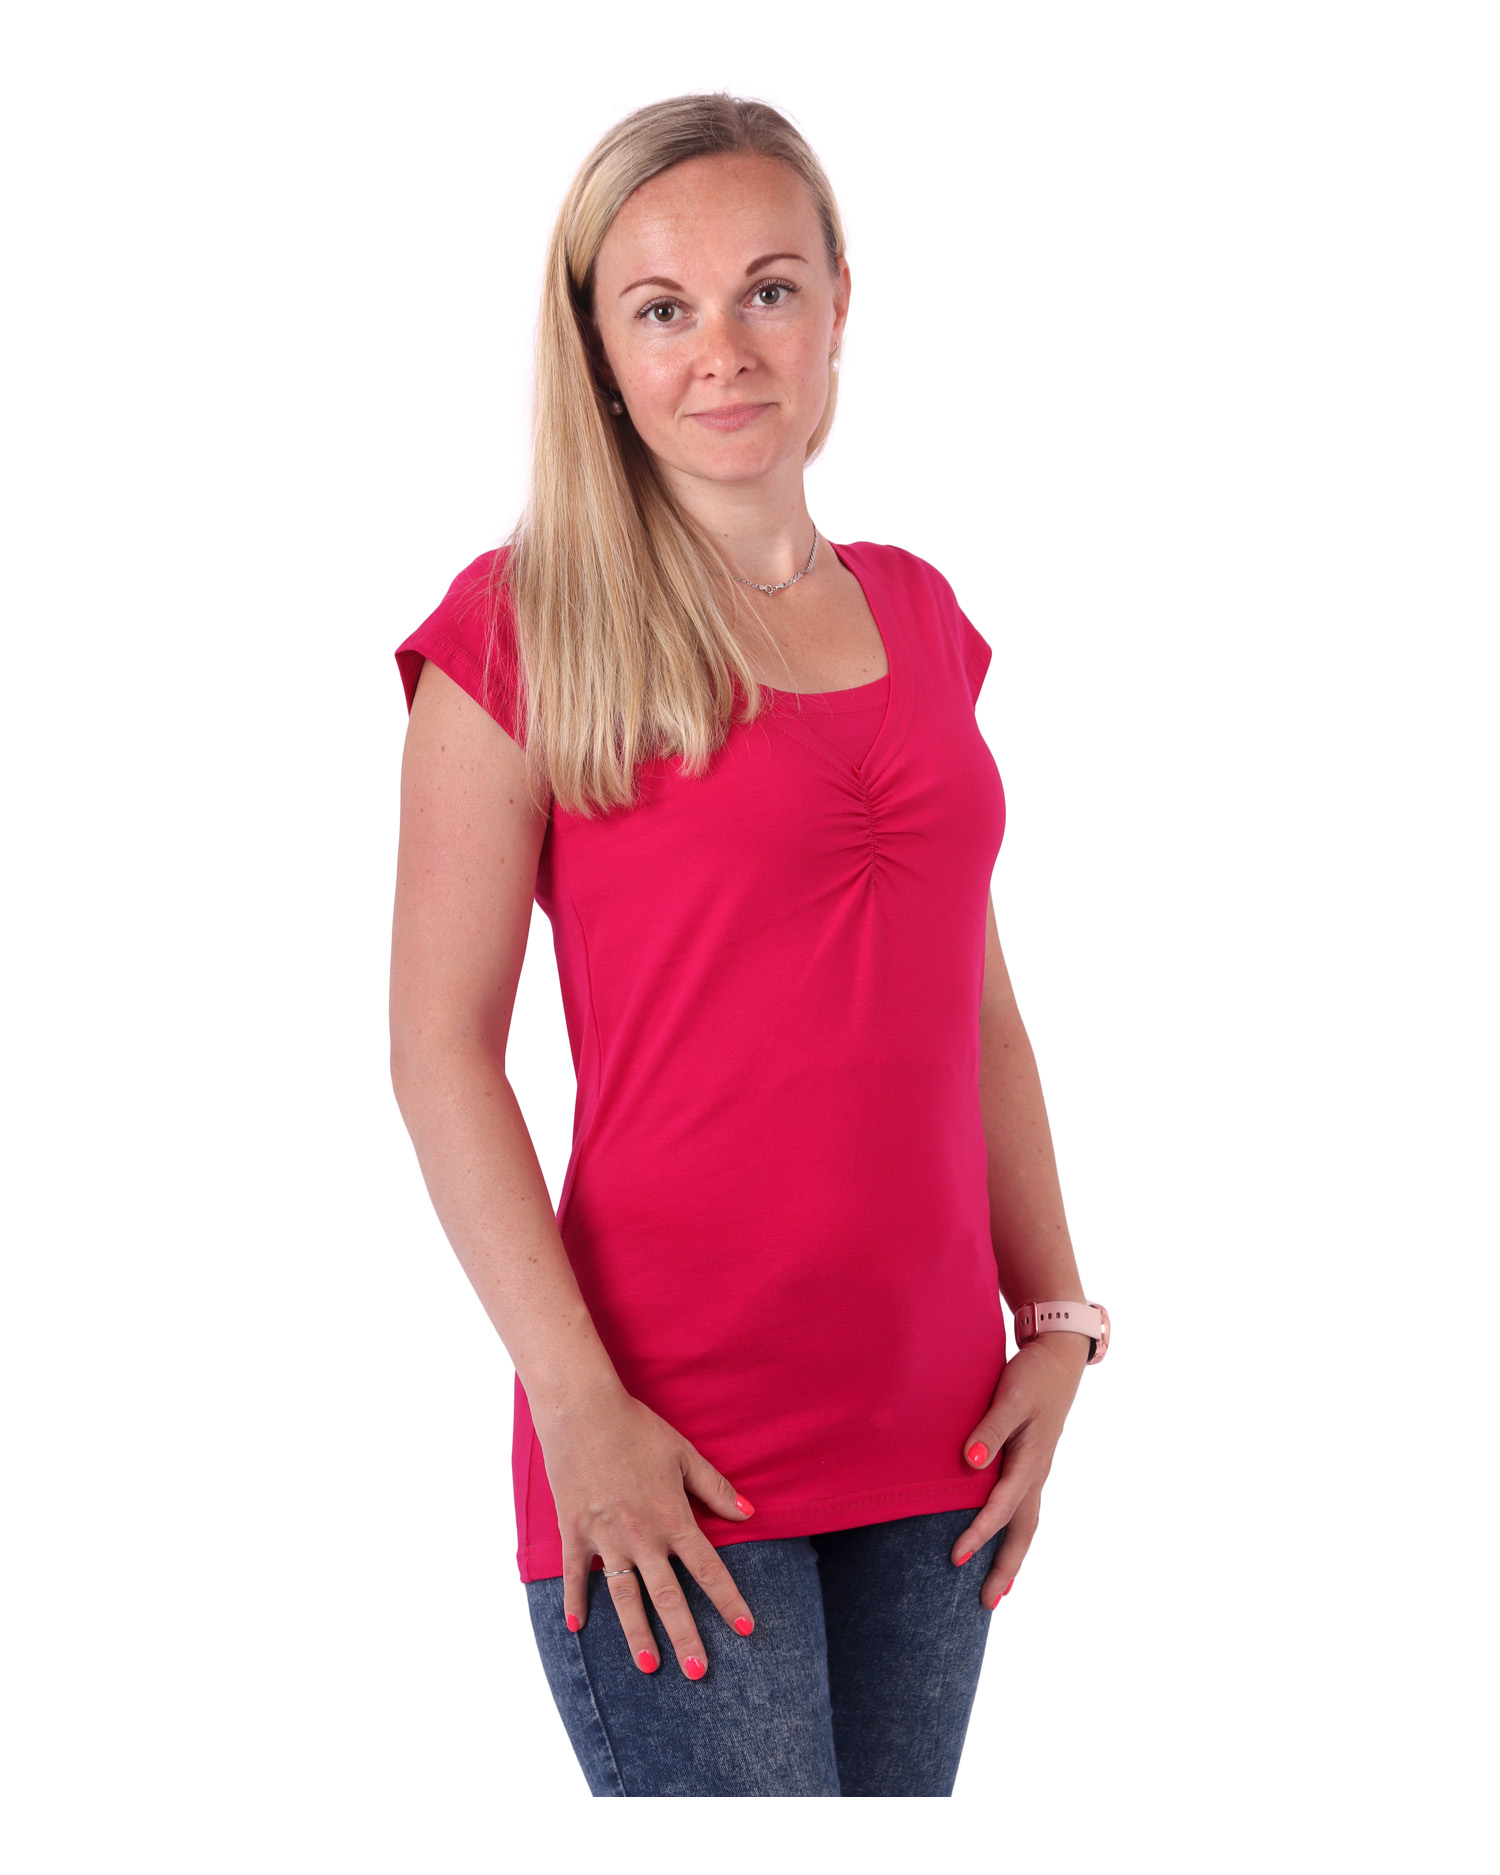 Breast-feeding T-shirt Klaudie, short sleeves, DARK PINK